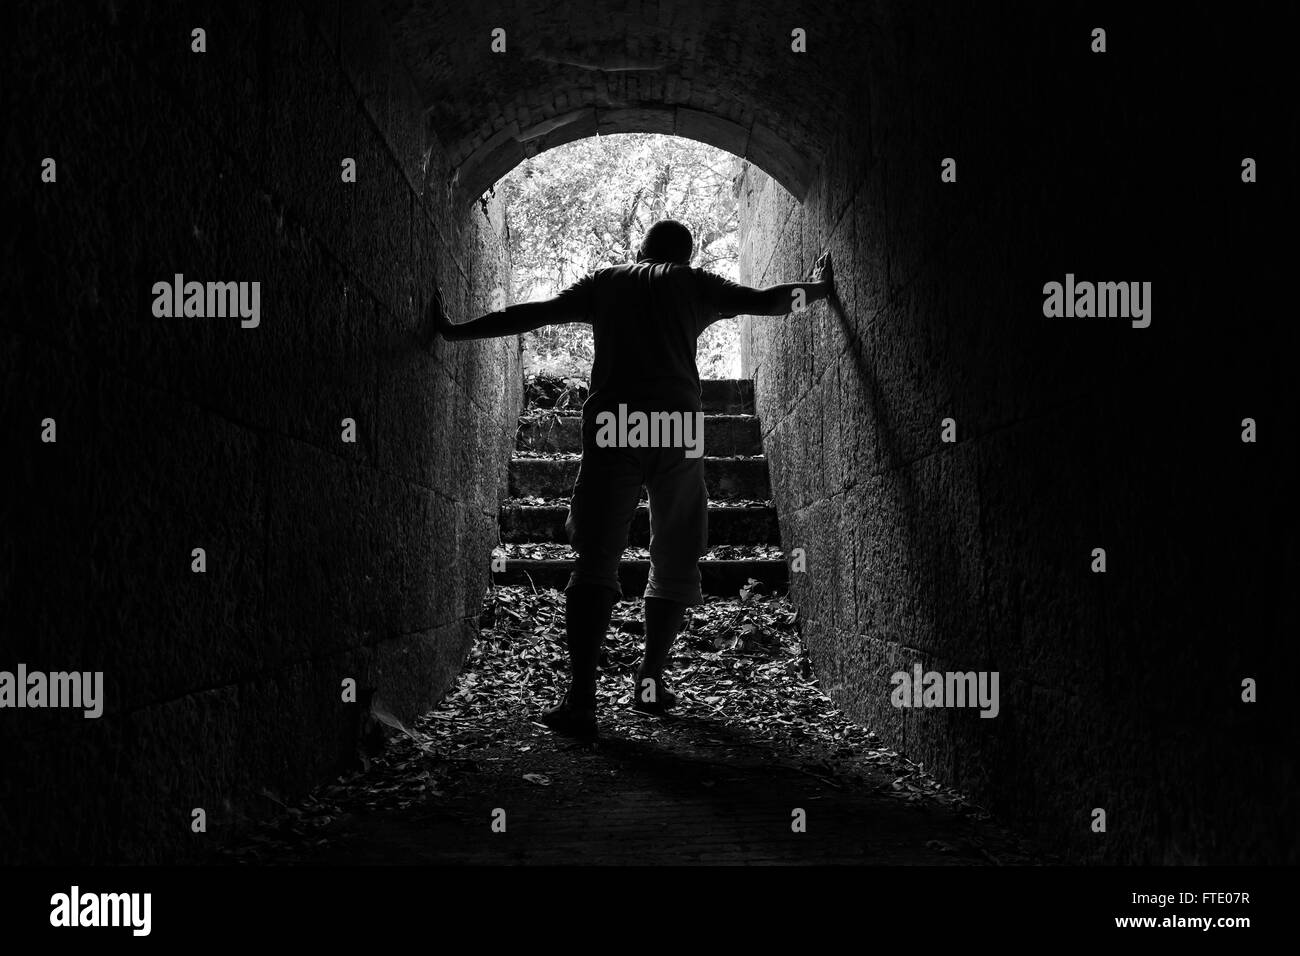 Jeune homme fatigué laisse pierre sombre tunnel avec extrémité rougeoyante, photo en noir et blanc Banque D'Images